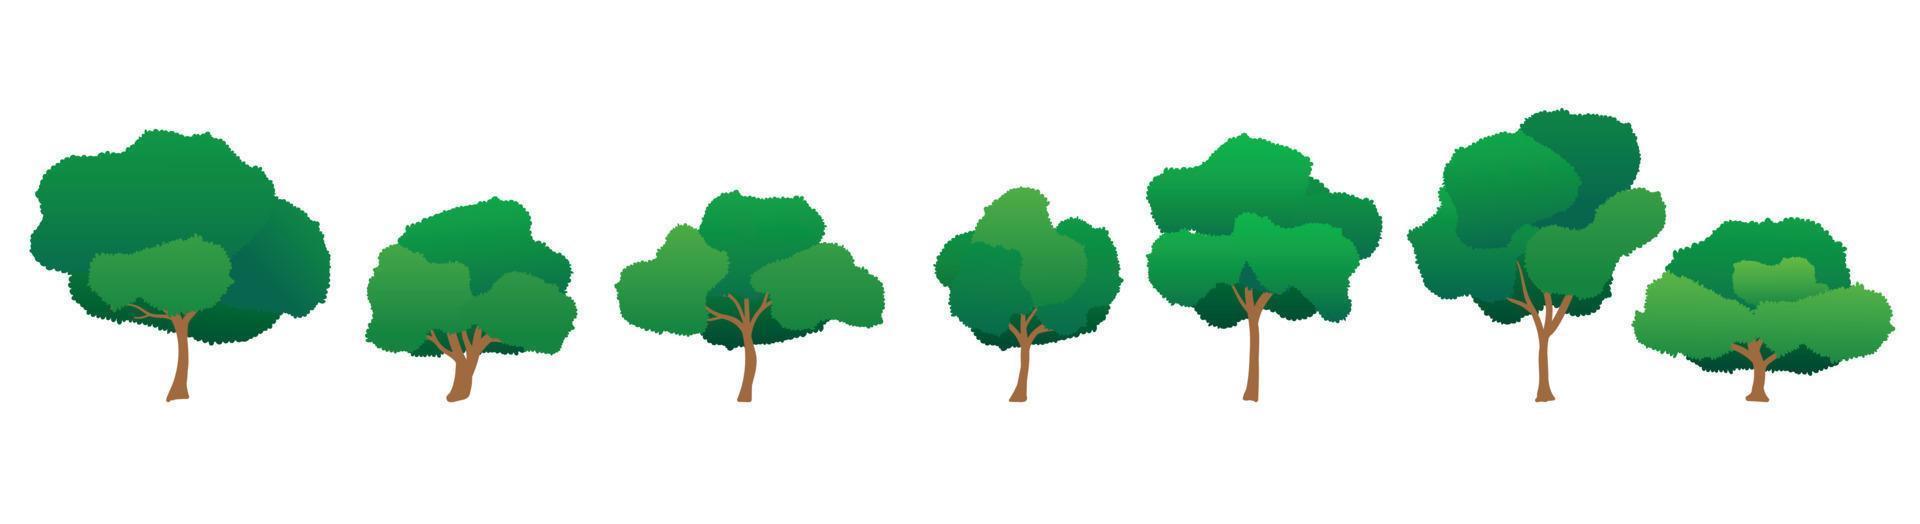 samling av tecknade träd illustrationer. kan användas för att illustrera vilken natur eller hälsosam livsstil eller ekologi som helst. vektor